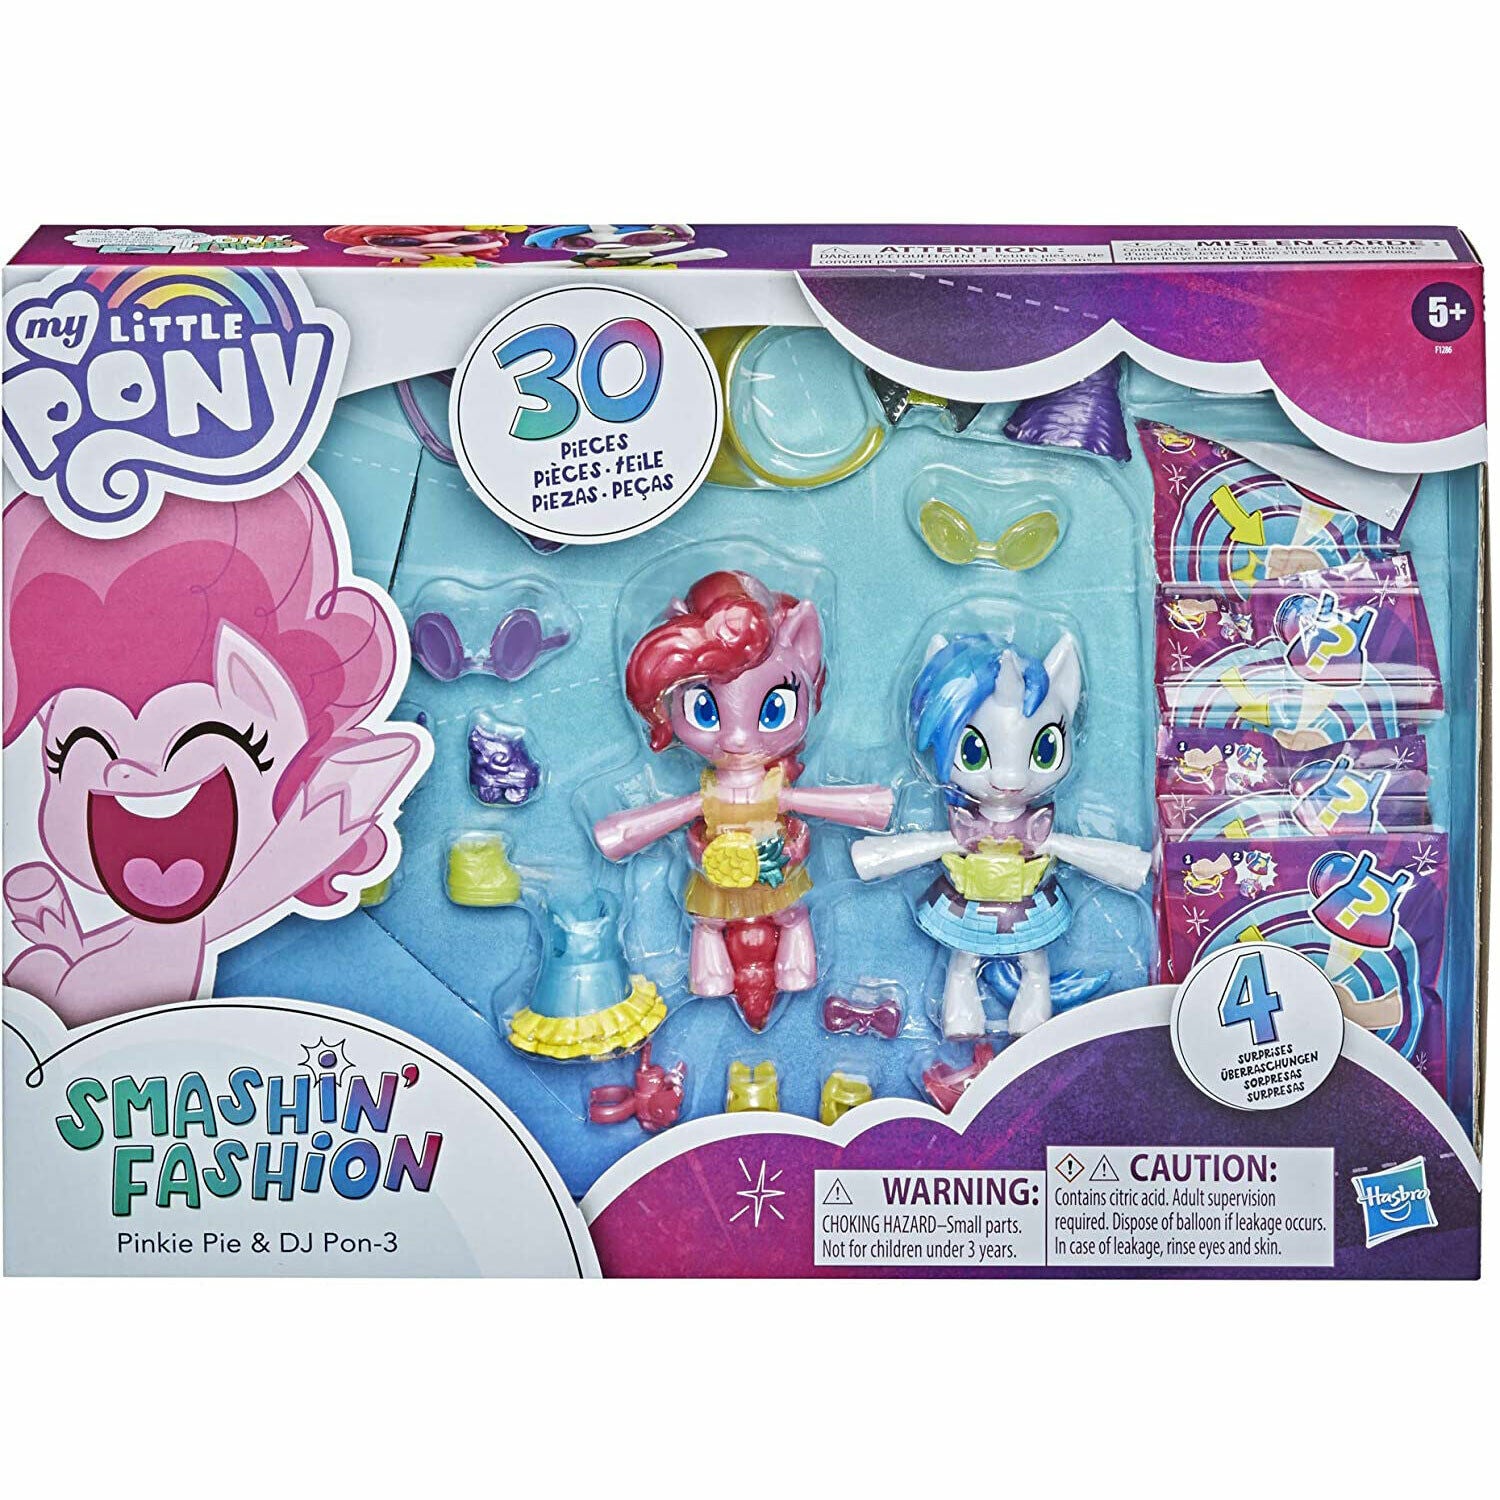 New My Little Pony Smashin' Fashion 2-Pack - Pinkie Pie & DJ Pon-3